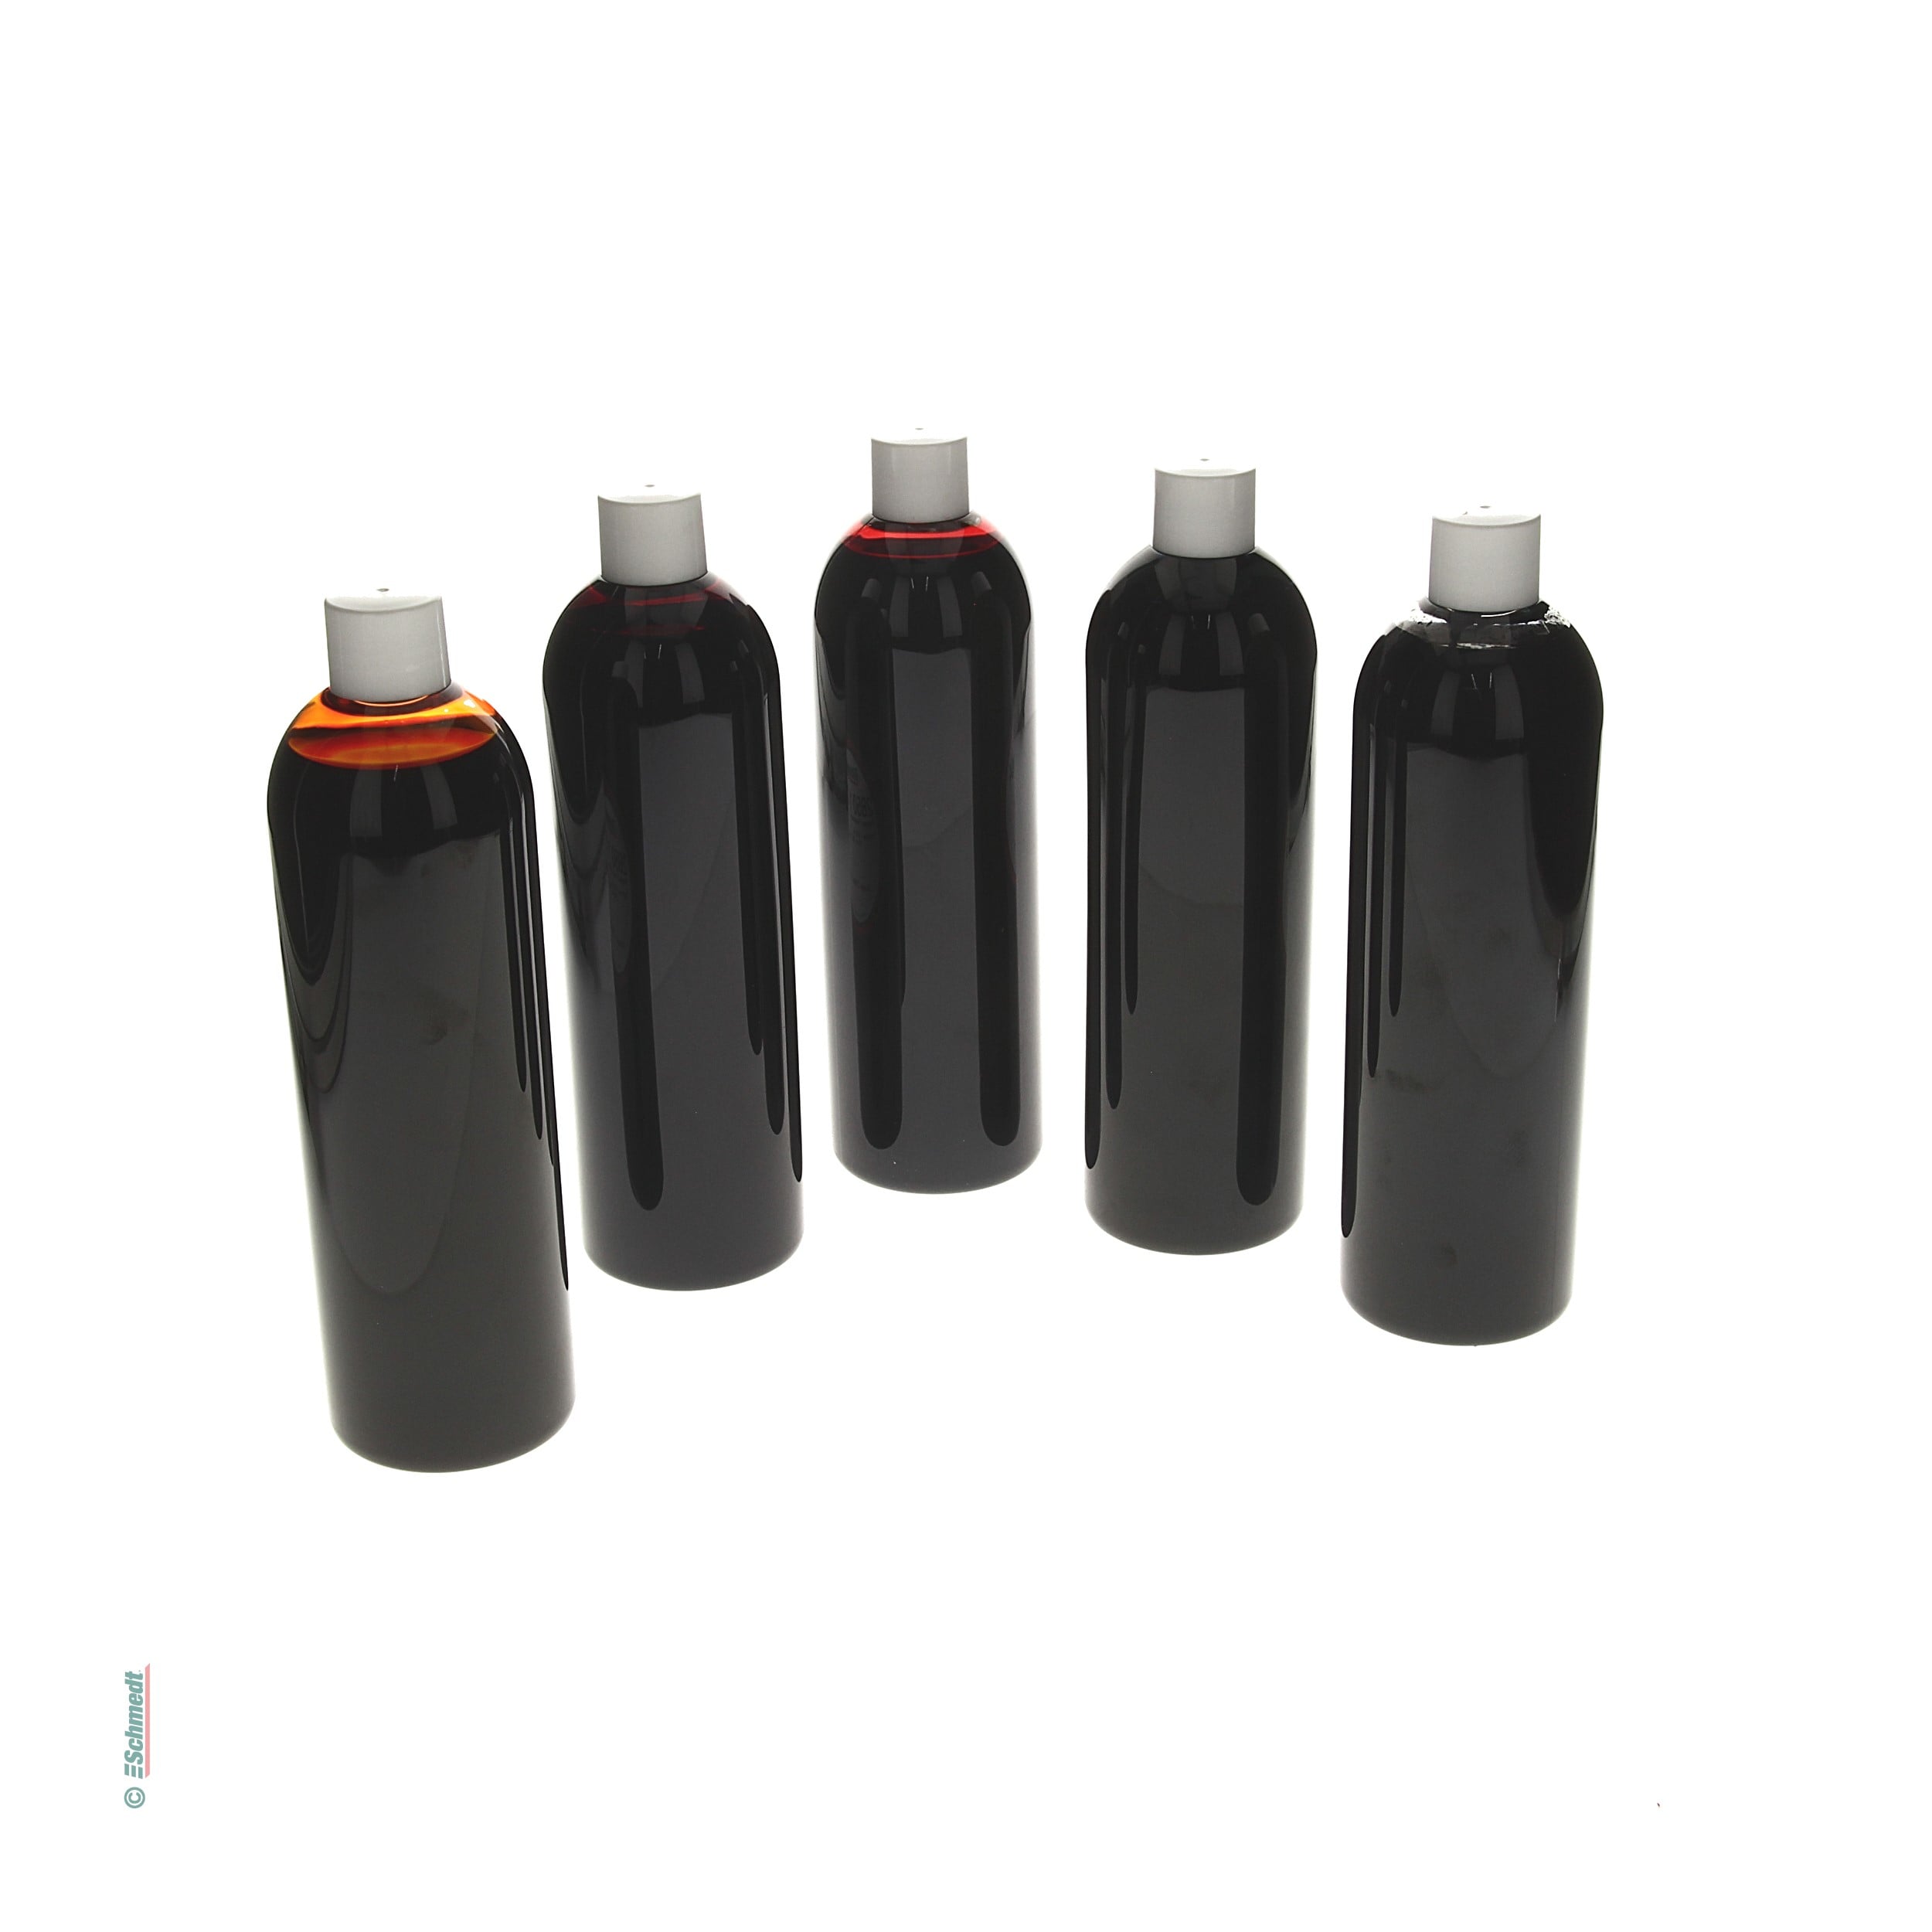 Pergasol tinte para papel | Juego - compuesto de 1 botella por cada color (de 500 ml) - para decolorar fibras y hojas de papel por medios de... - imagen-1